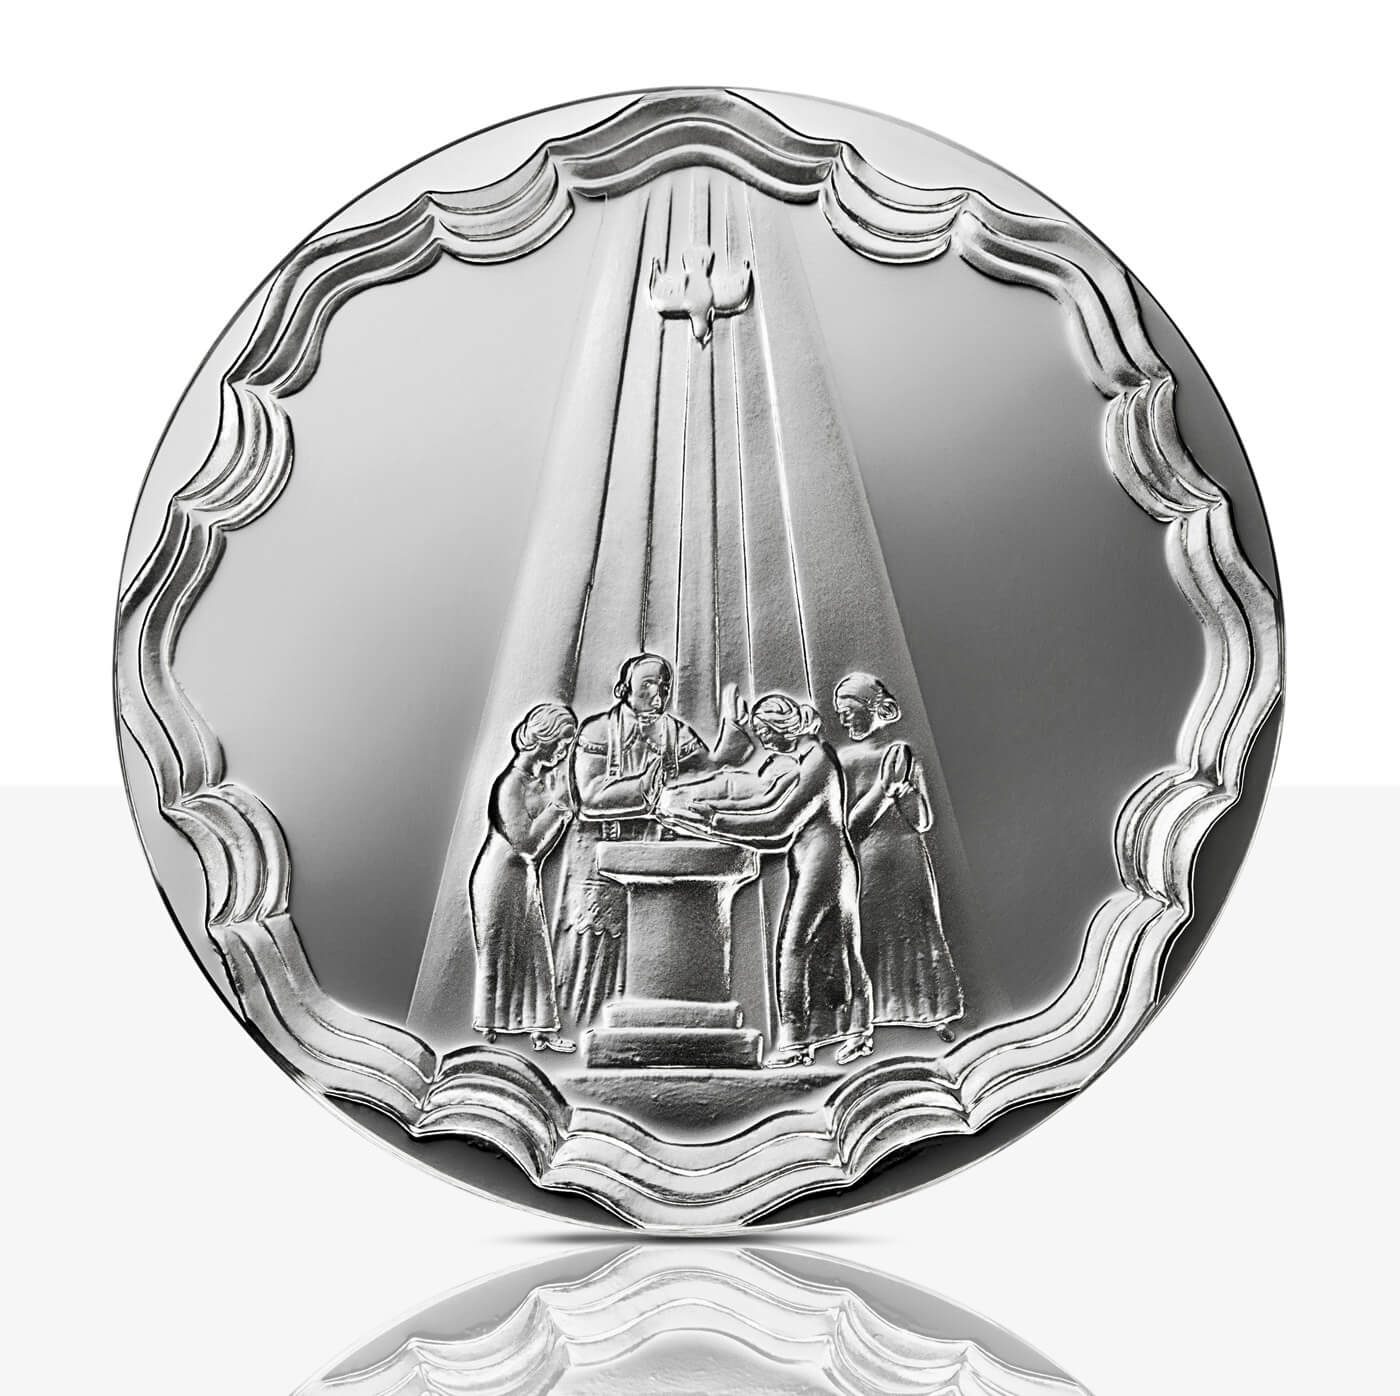 baptism medal silver